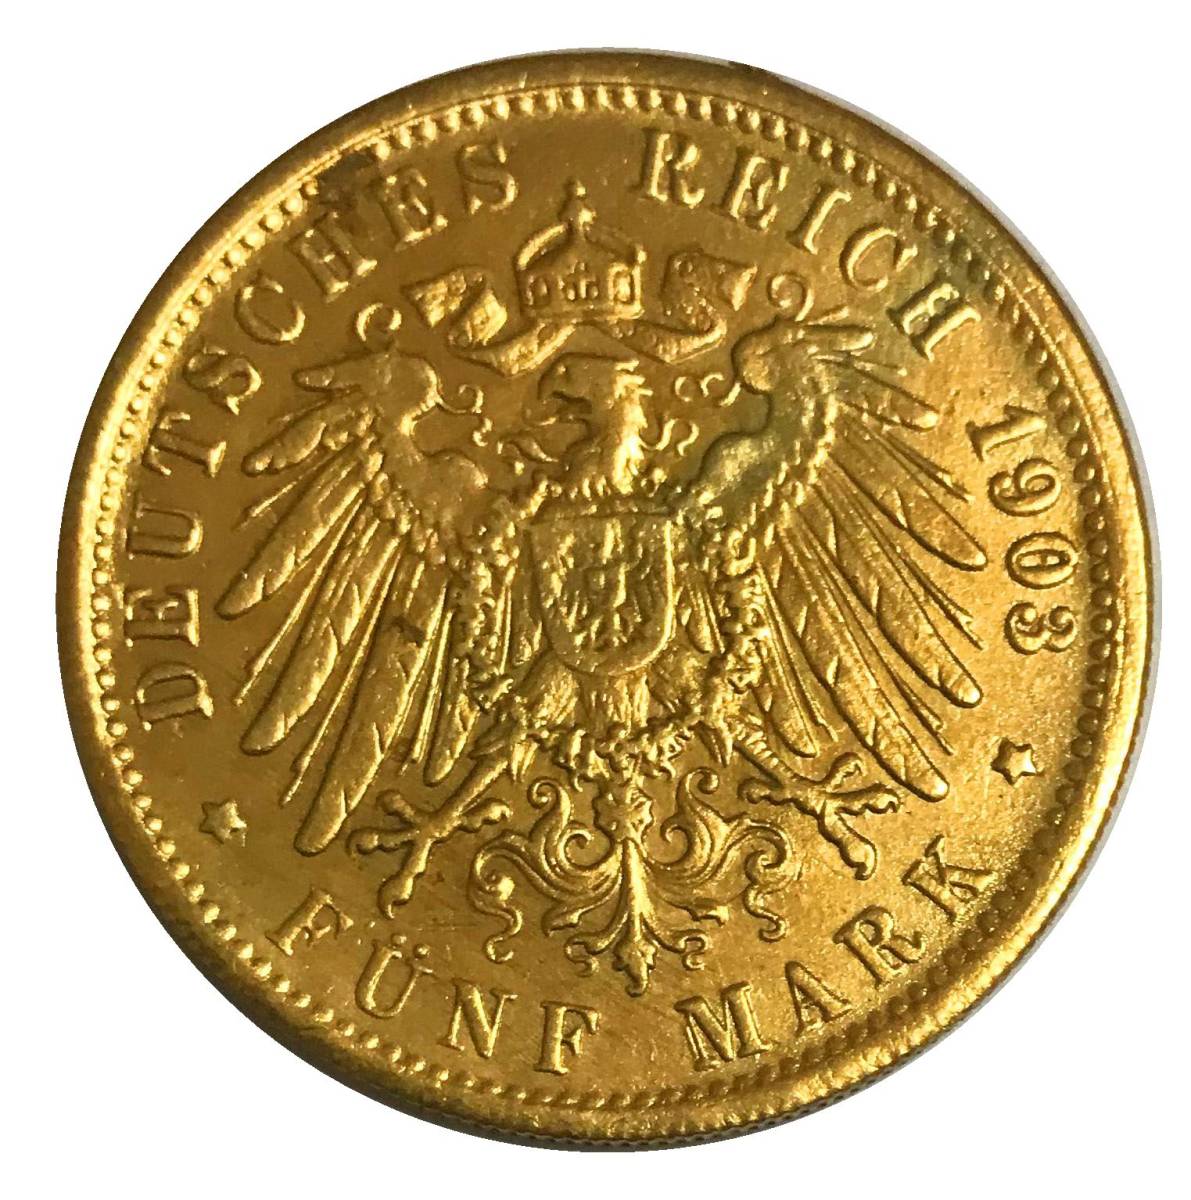  原文: 大型 金貨 ドイツ帝国 1903年 ドイツ?マルク 稀有 37.8mm 22.5